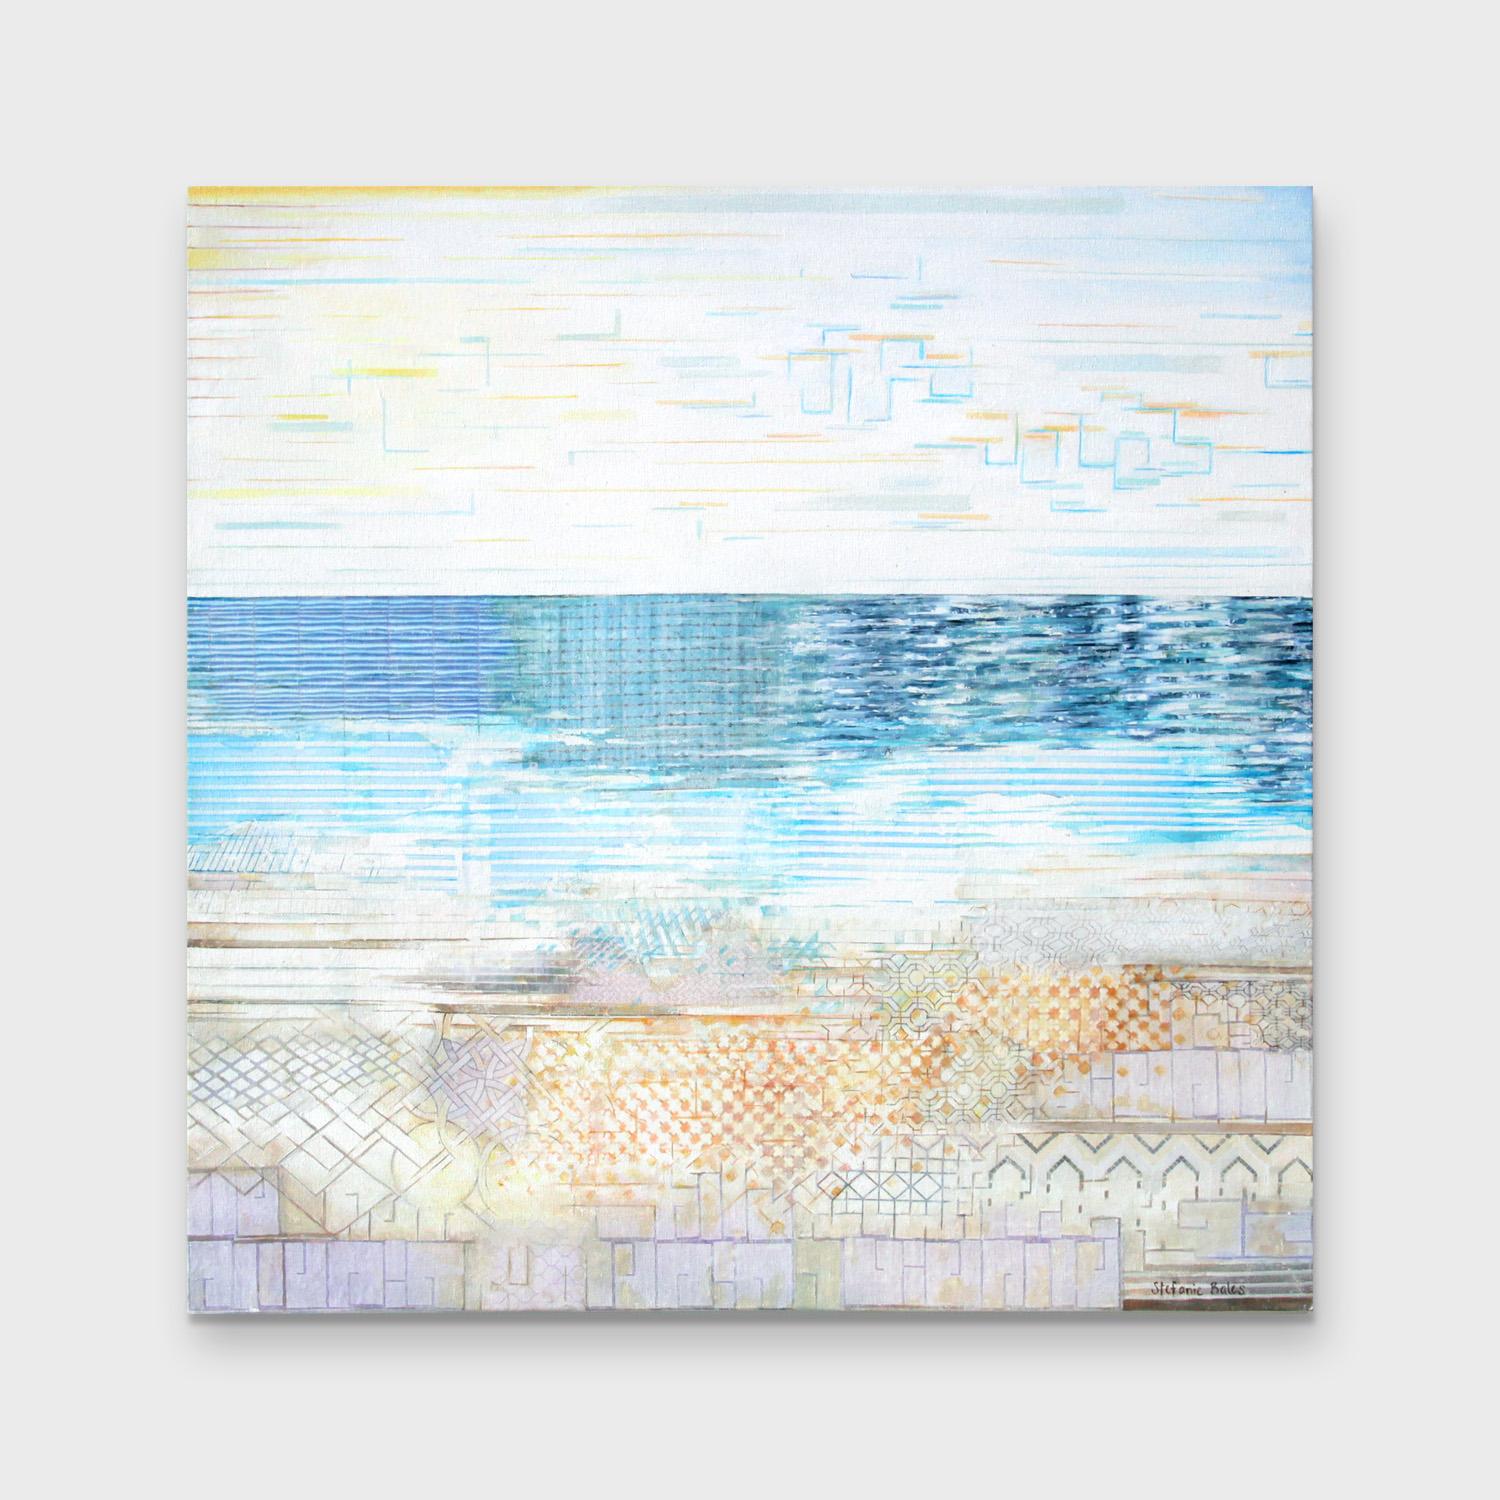 Une peinture abstraite à l'acrylique et à l'encre sur toile, Sea Level - Abstrait Painting par Stefanie Bales